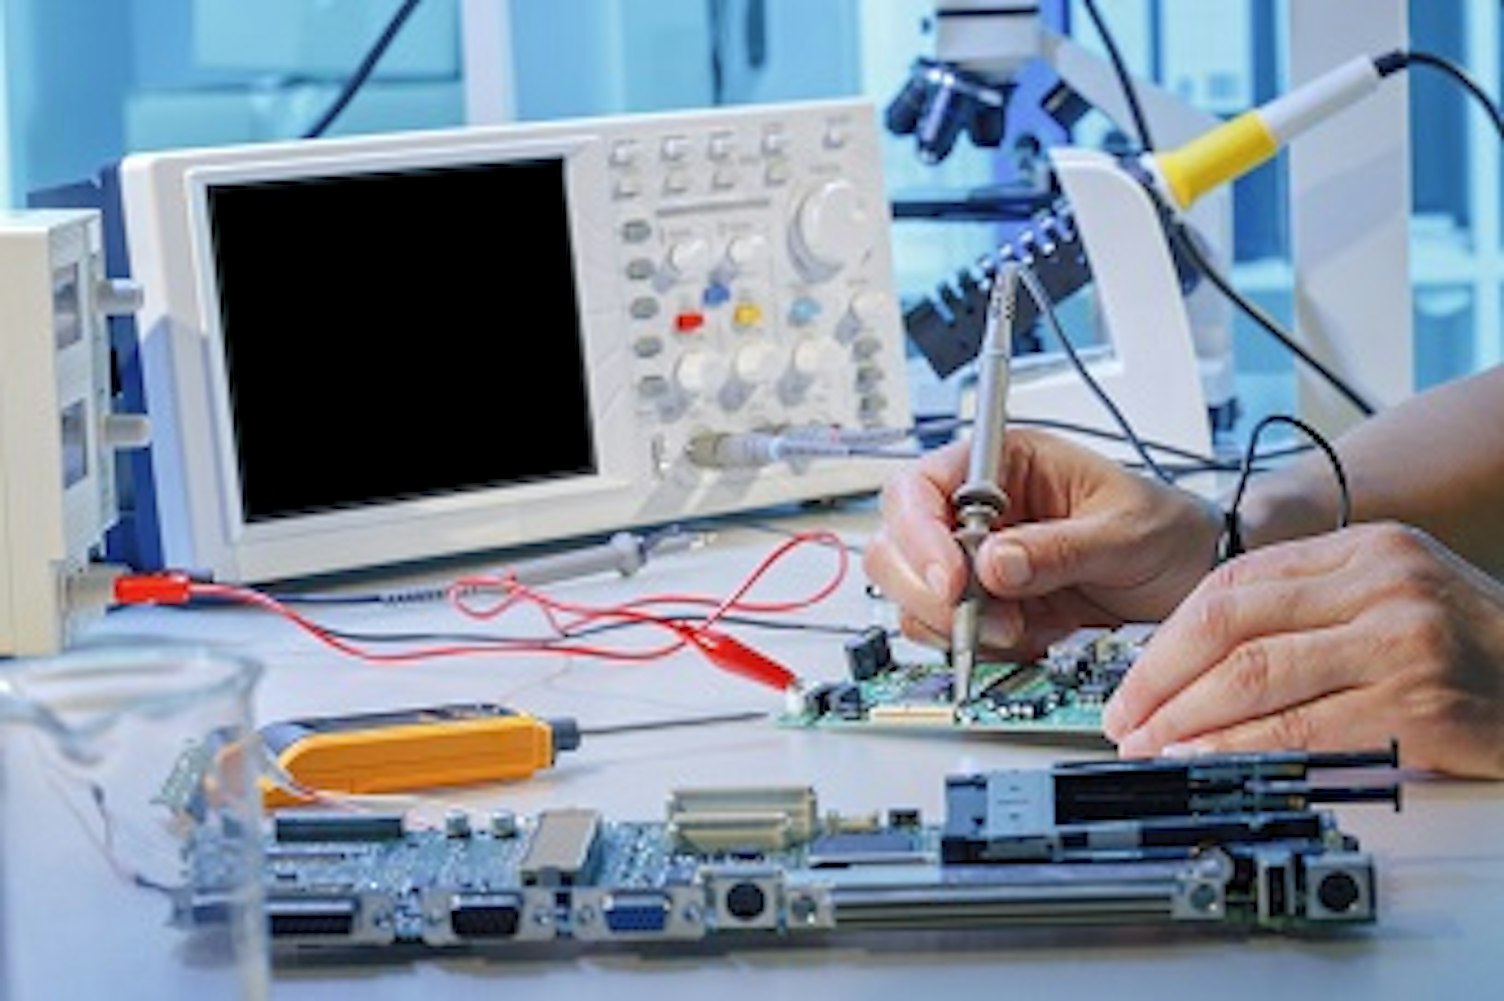 orig repairing printed circuit board